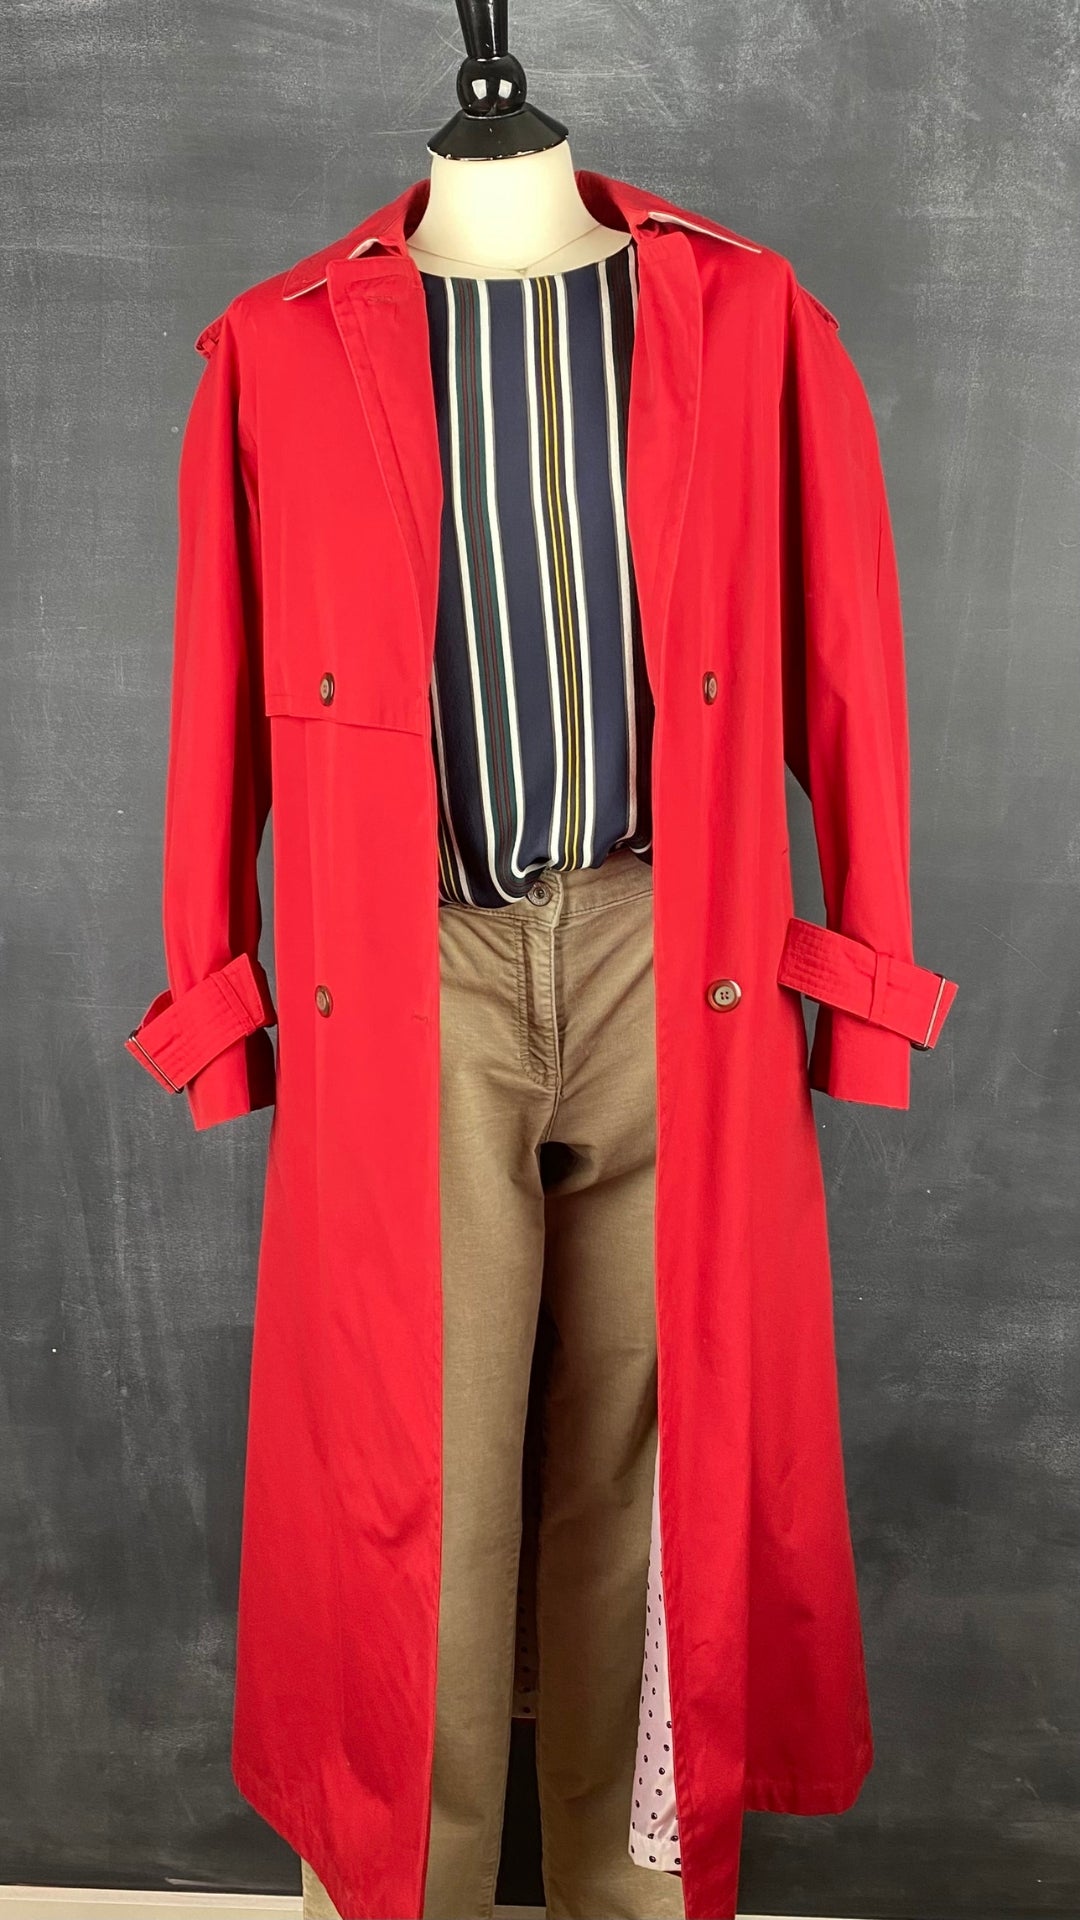 Pantalon en fin velours côtelé beige Brax, taille 31. Vue de l'agencement avec la blouse en soie rayée et le trench vintage rouge.